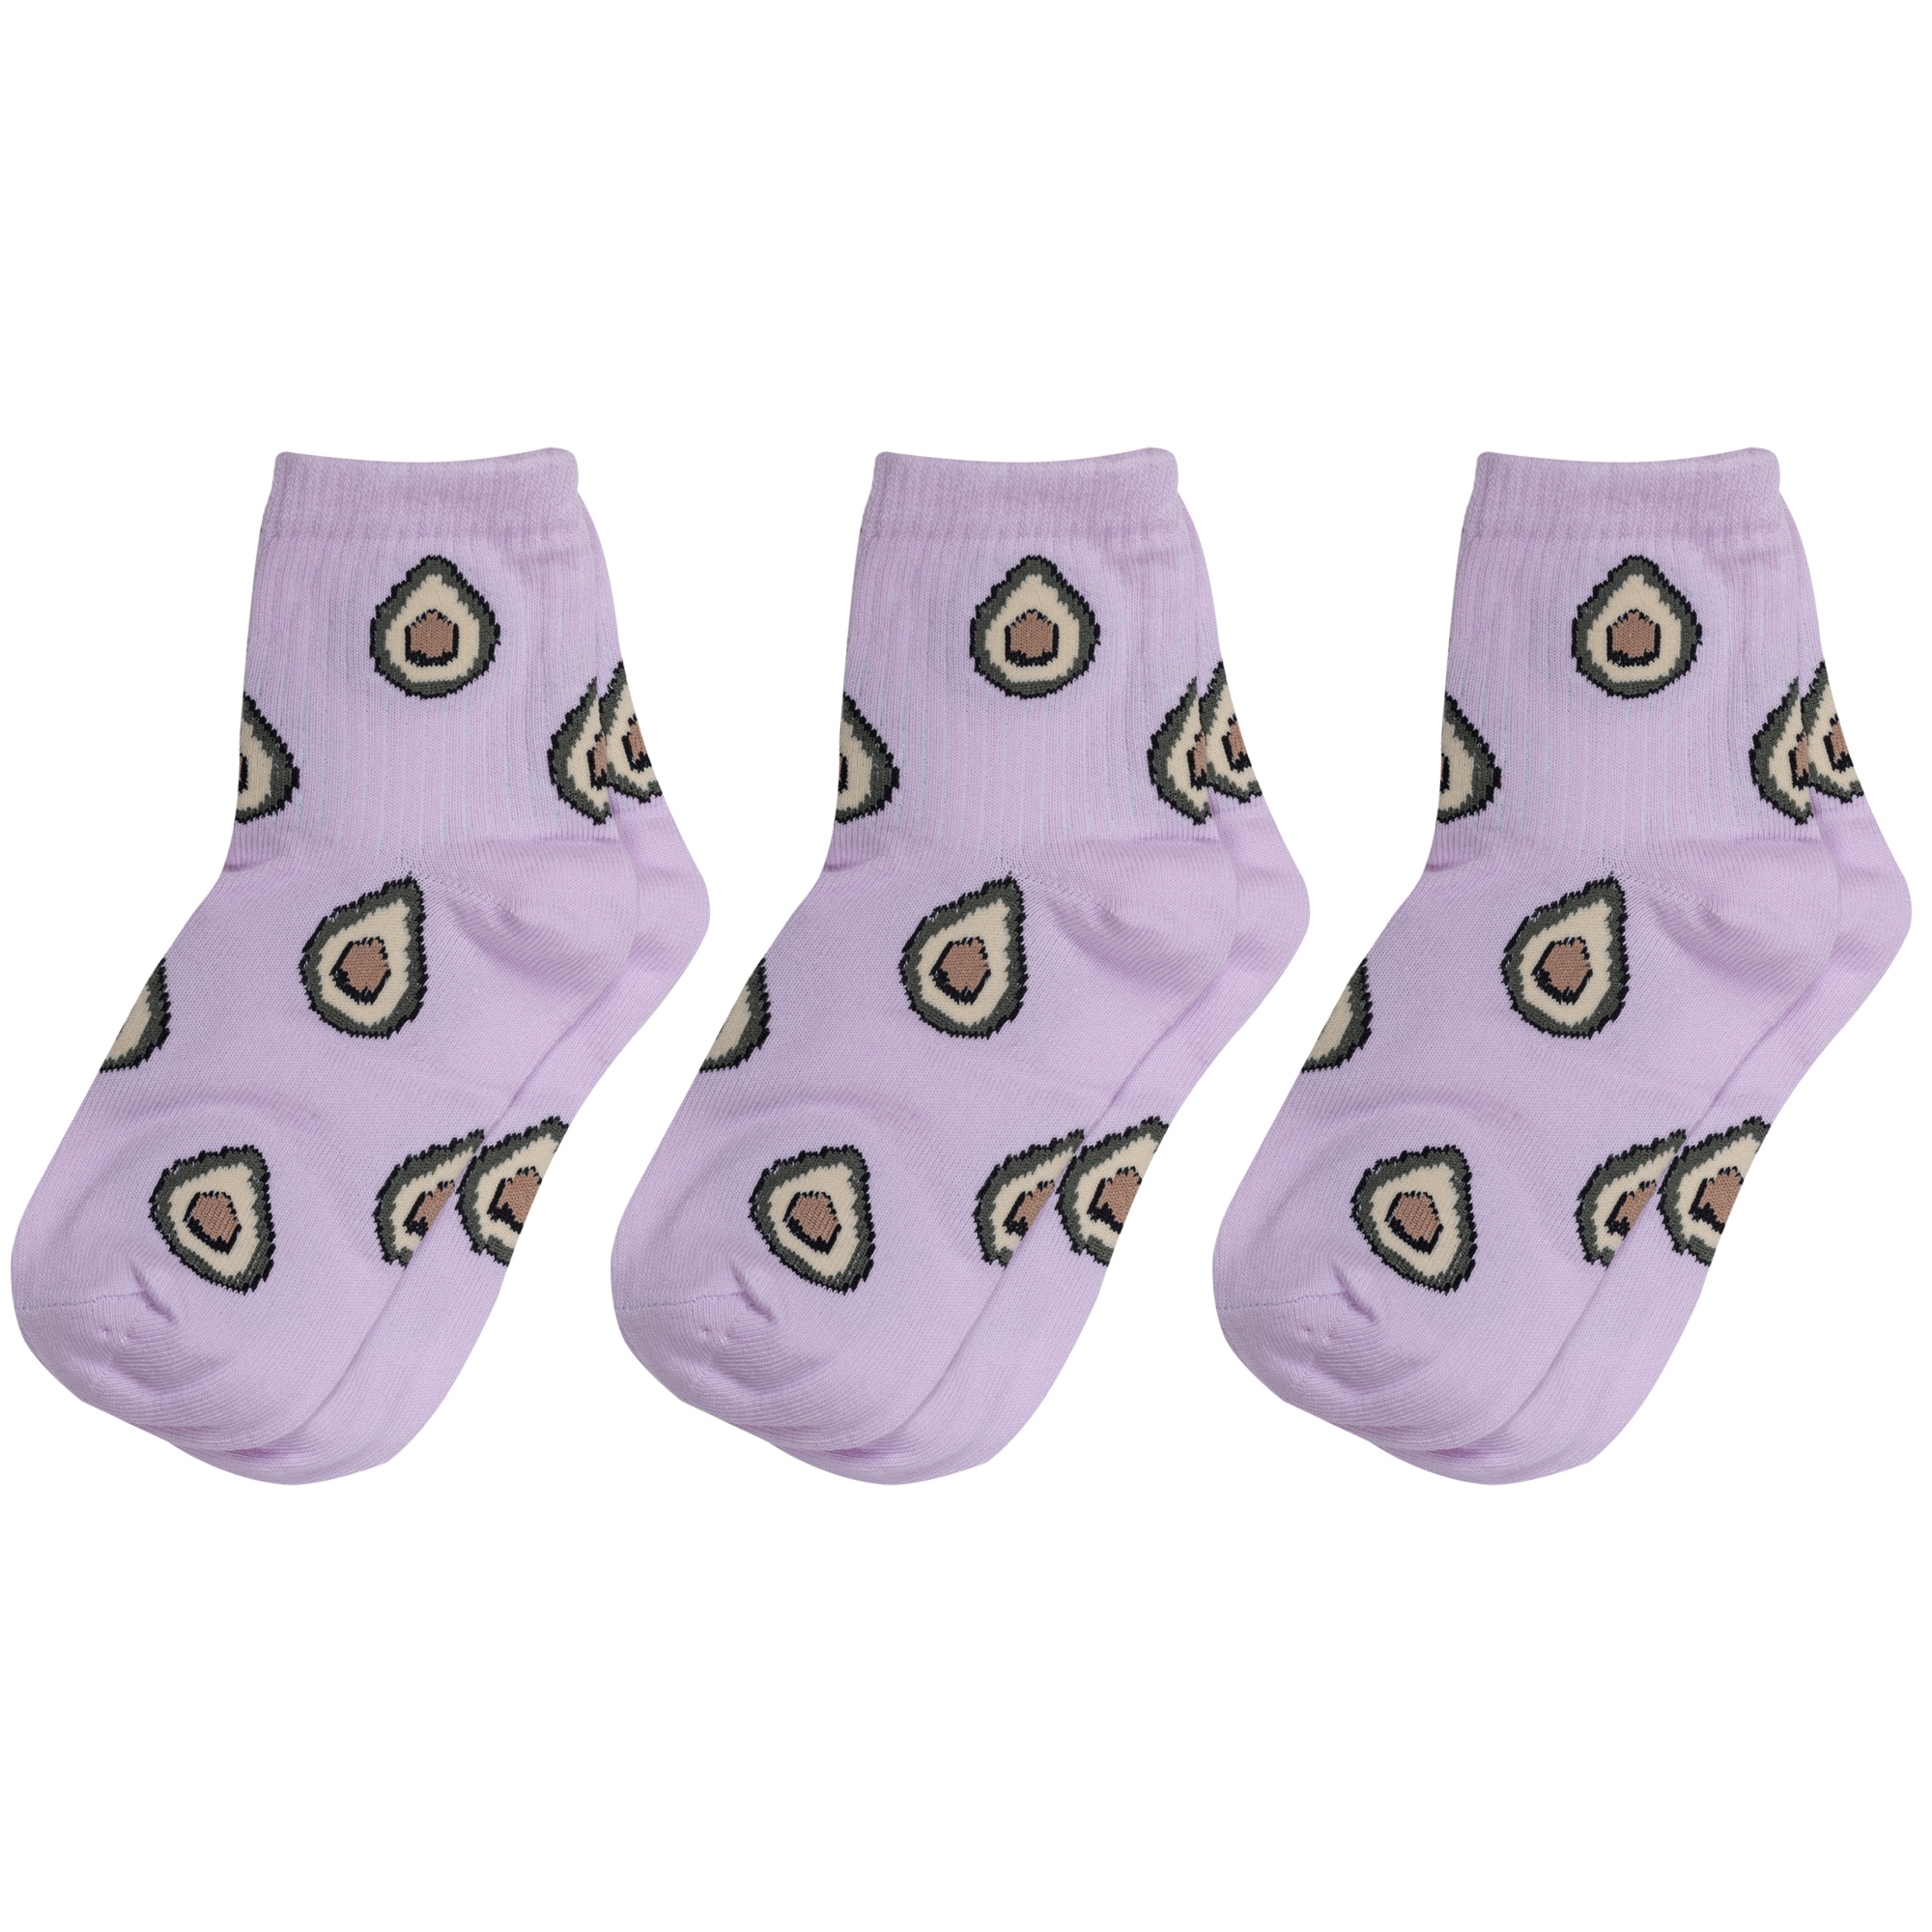 Носки для девочек Альтаир 3-А223 цв. фиолетовый; зеленый; бежевый; коричневый р. 20-22